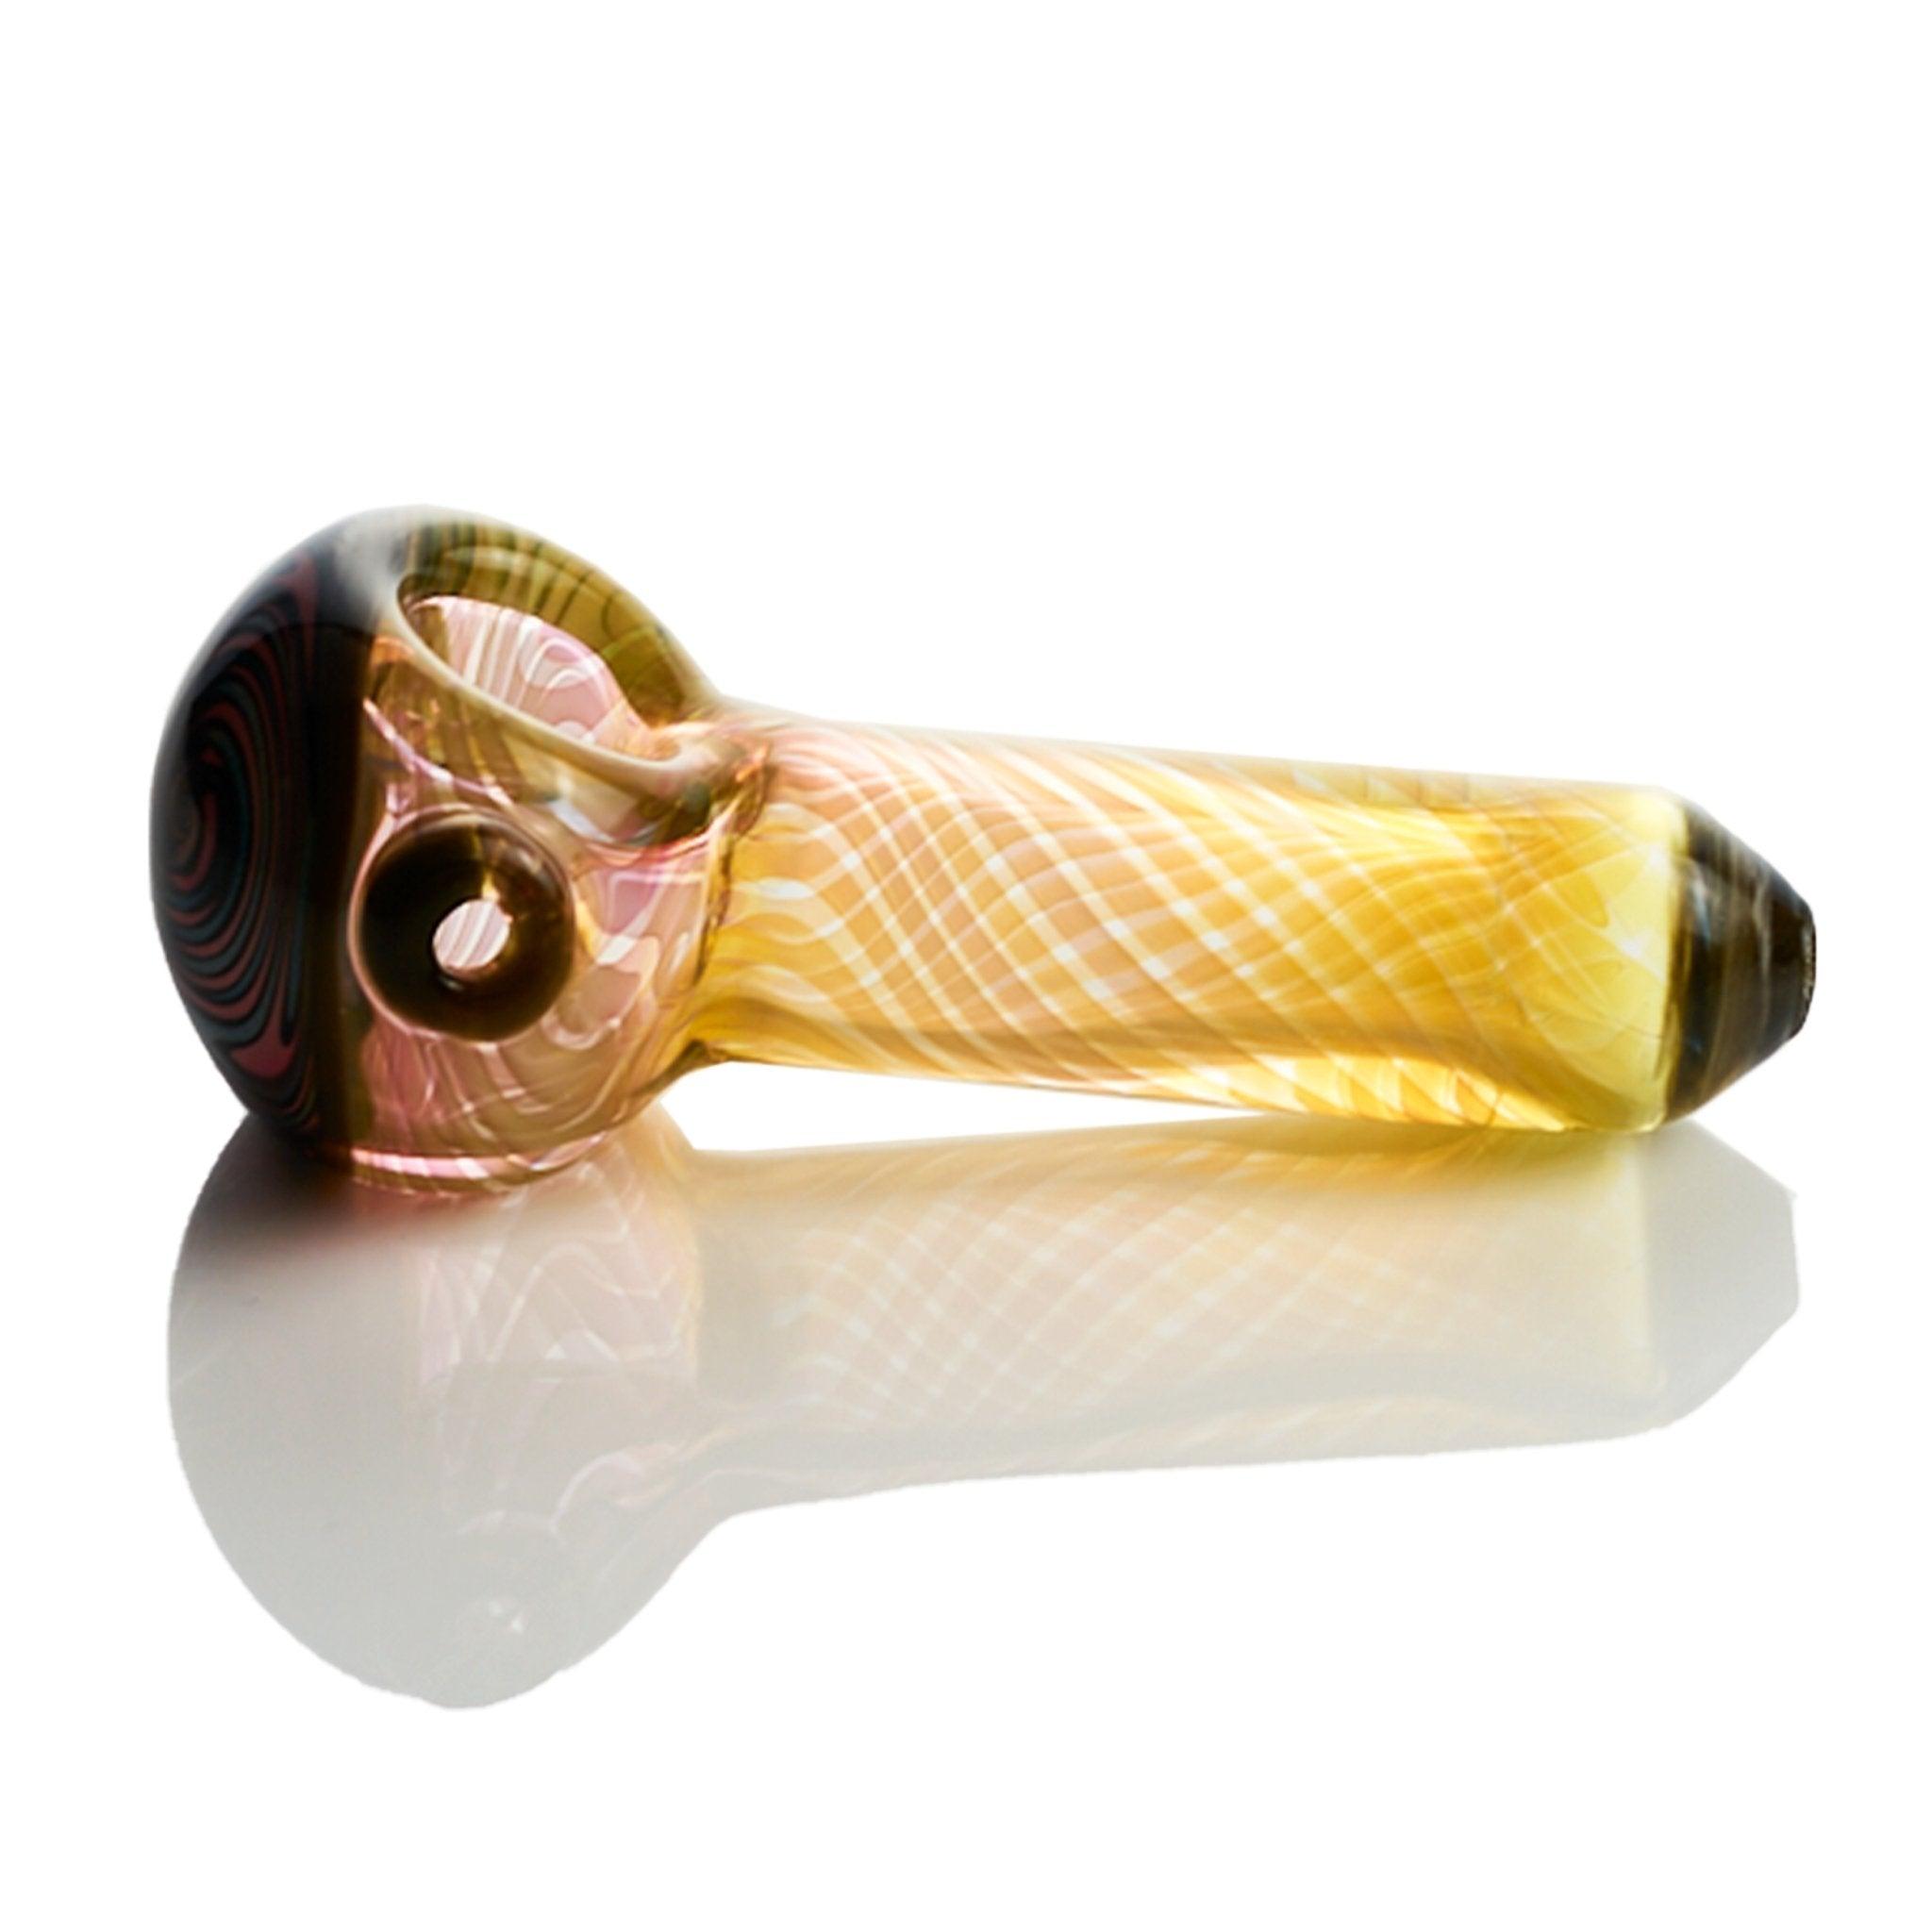 Westie Glass spoon fumed window crystal bliss & gormet dark colors - Smoke Spot Smoke Shop